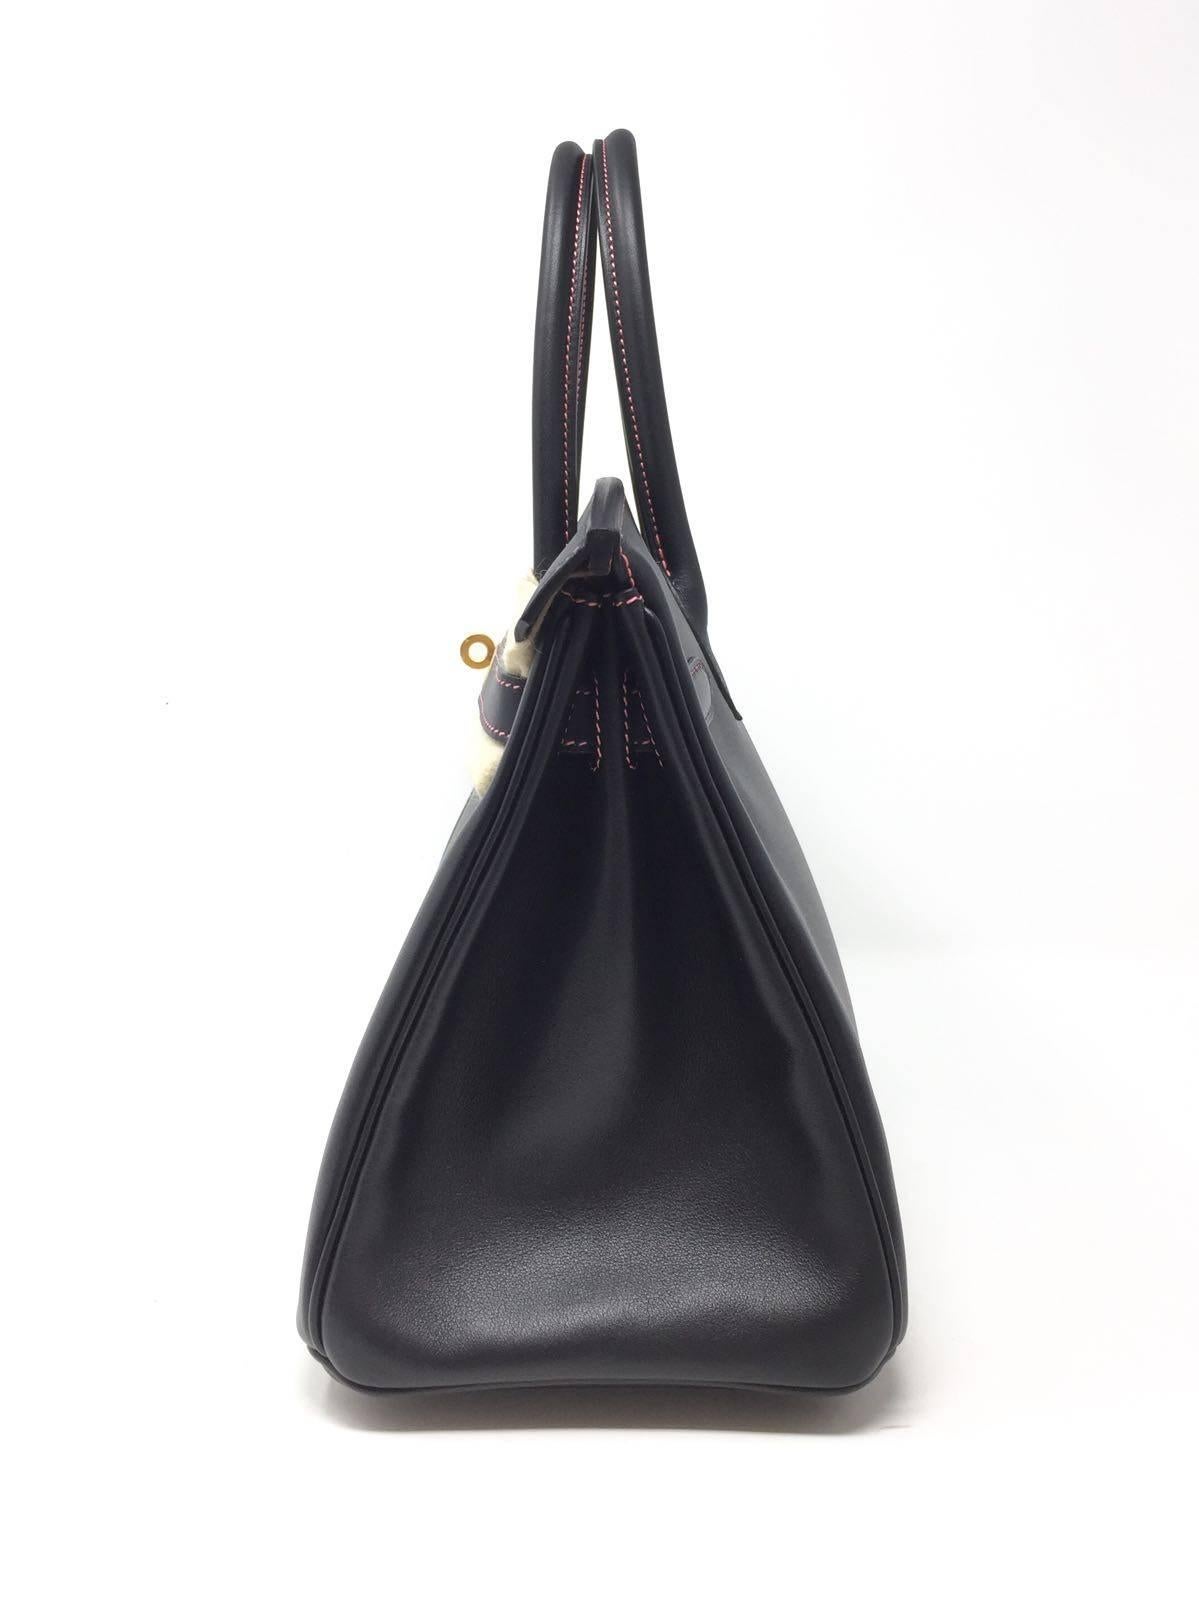 Hermes Black and Rose Azalee Chevre Special Order Birkin 30 cm Bag, 2018  10